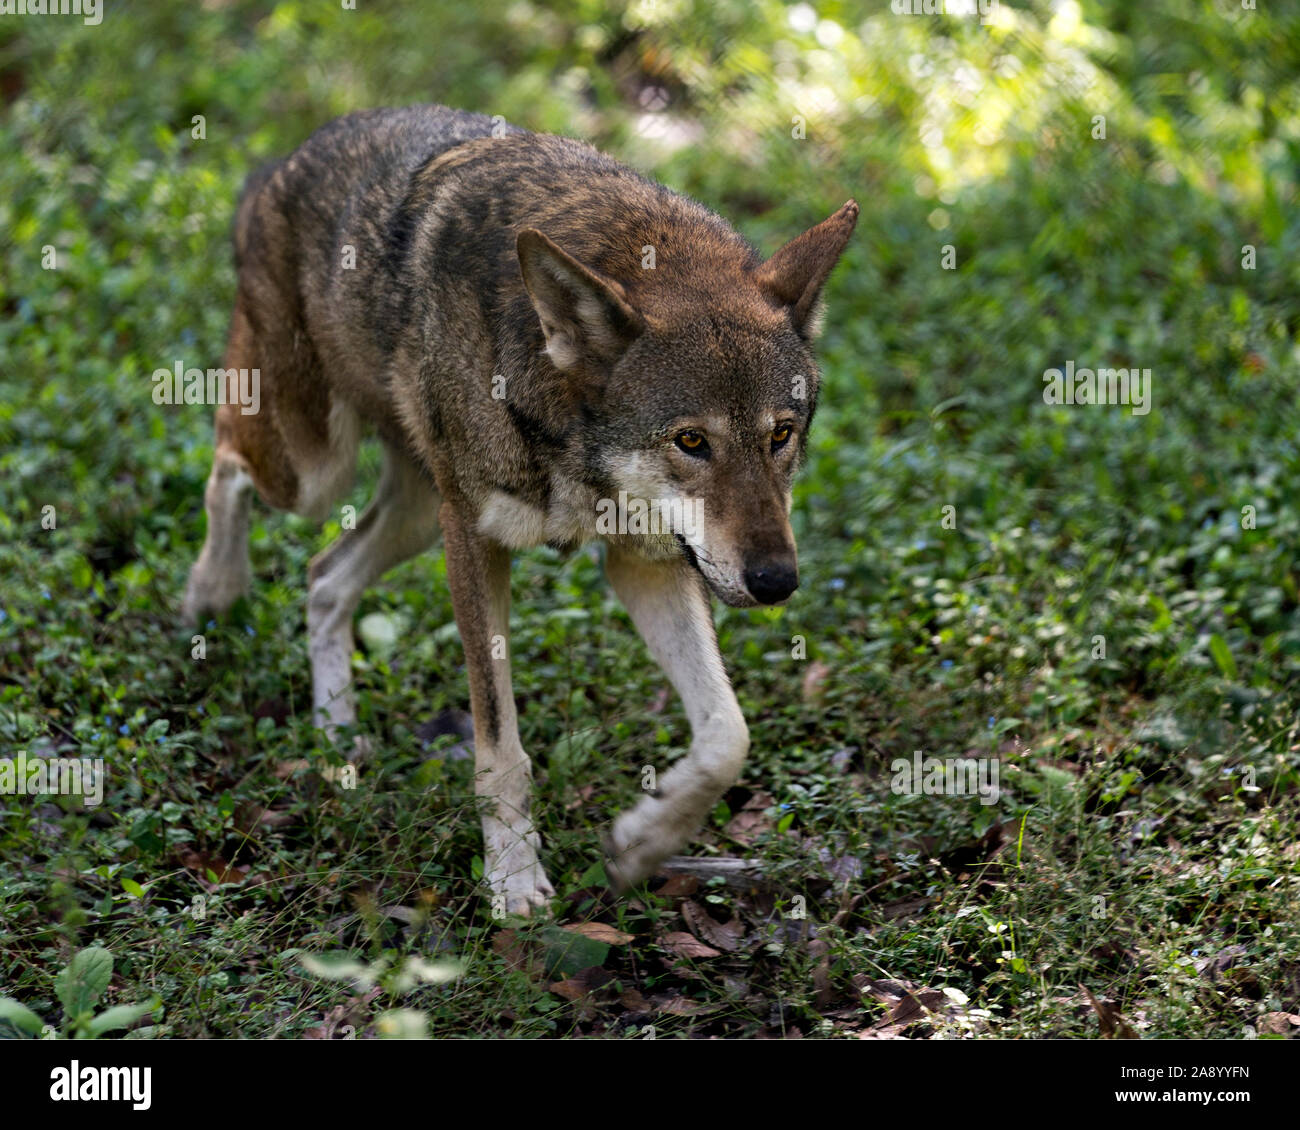 Wolf Profile Banque d'image et photos - Page 8 - Alamy